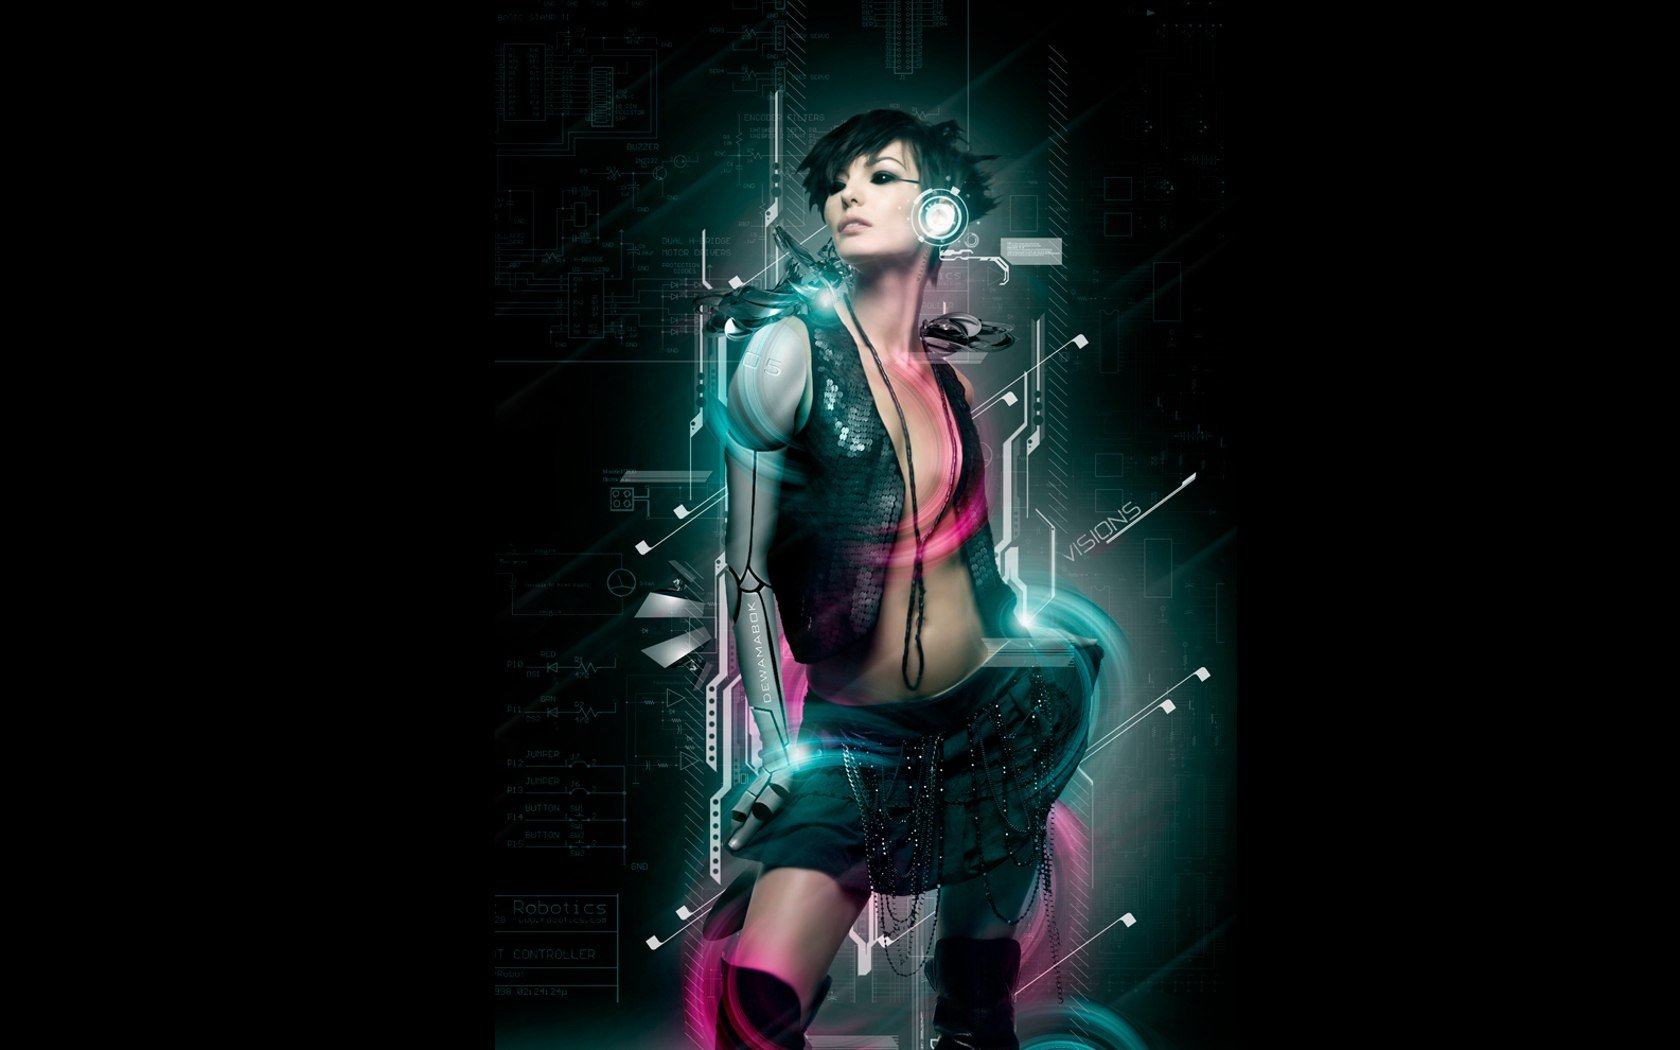 Cyberpunk girl wallpaper 1680x1050 HQ WALLPAPER   34680